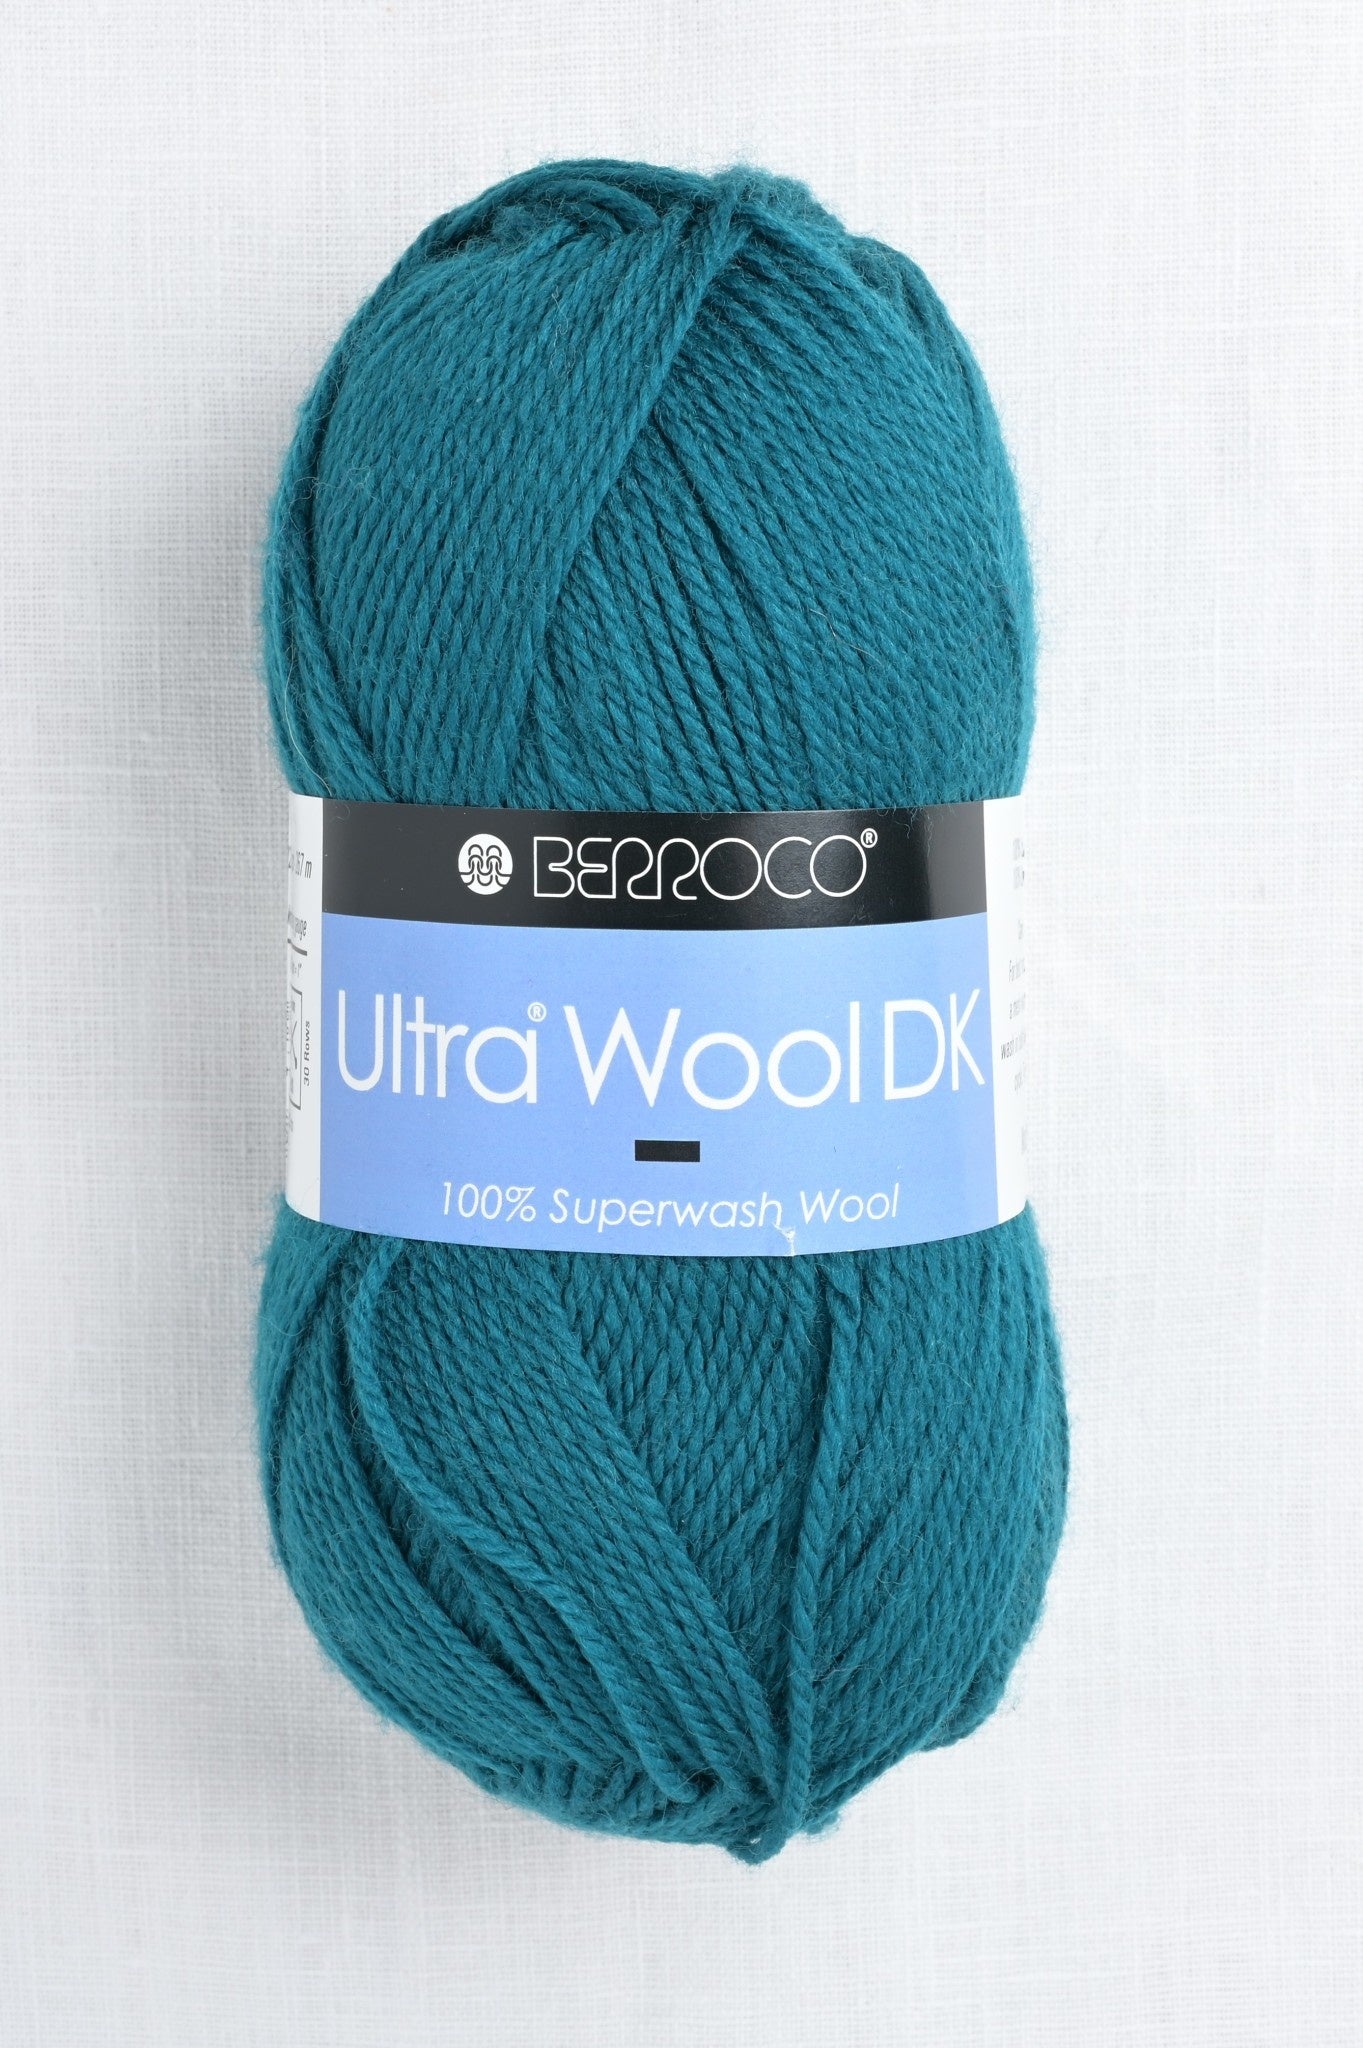 Berroco; Ultra Wool DK; Kale 8361